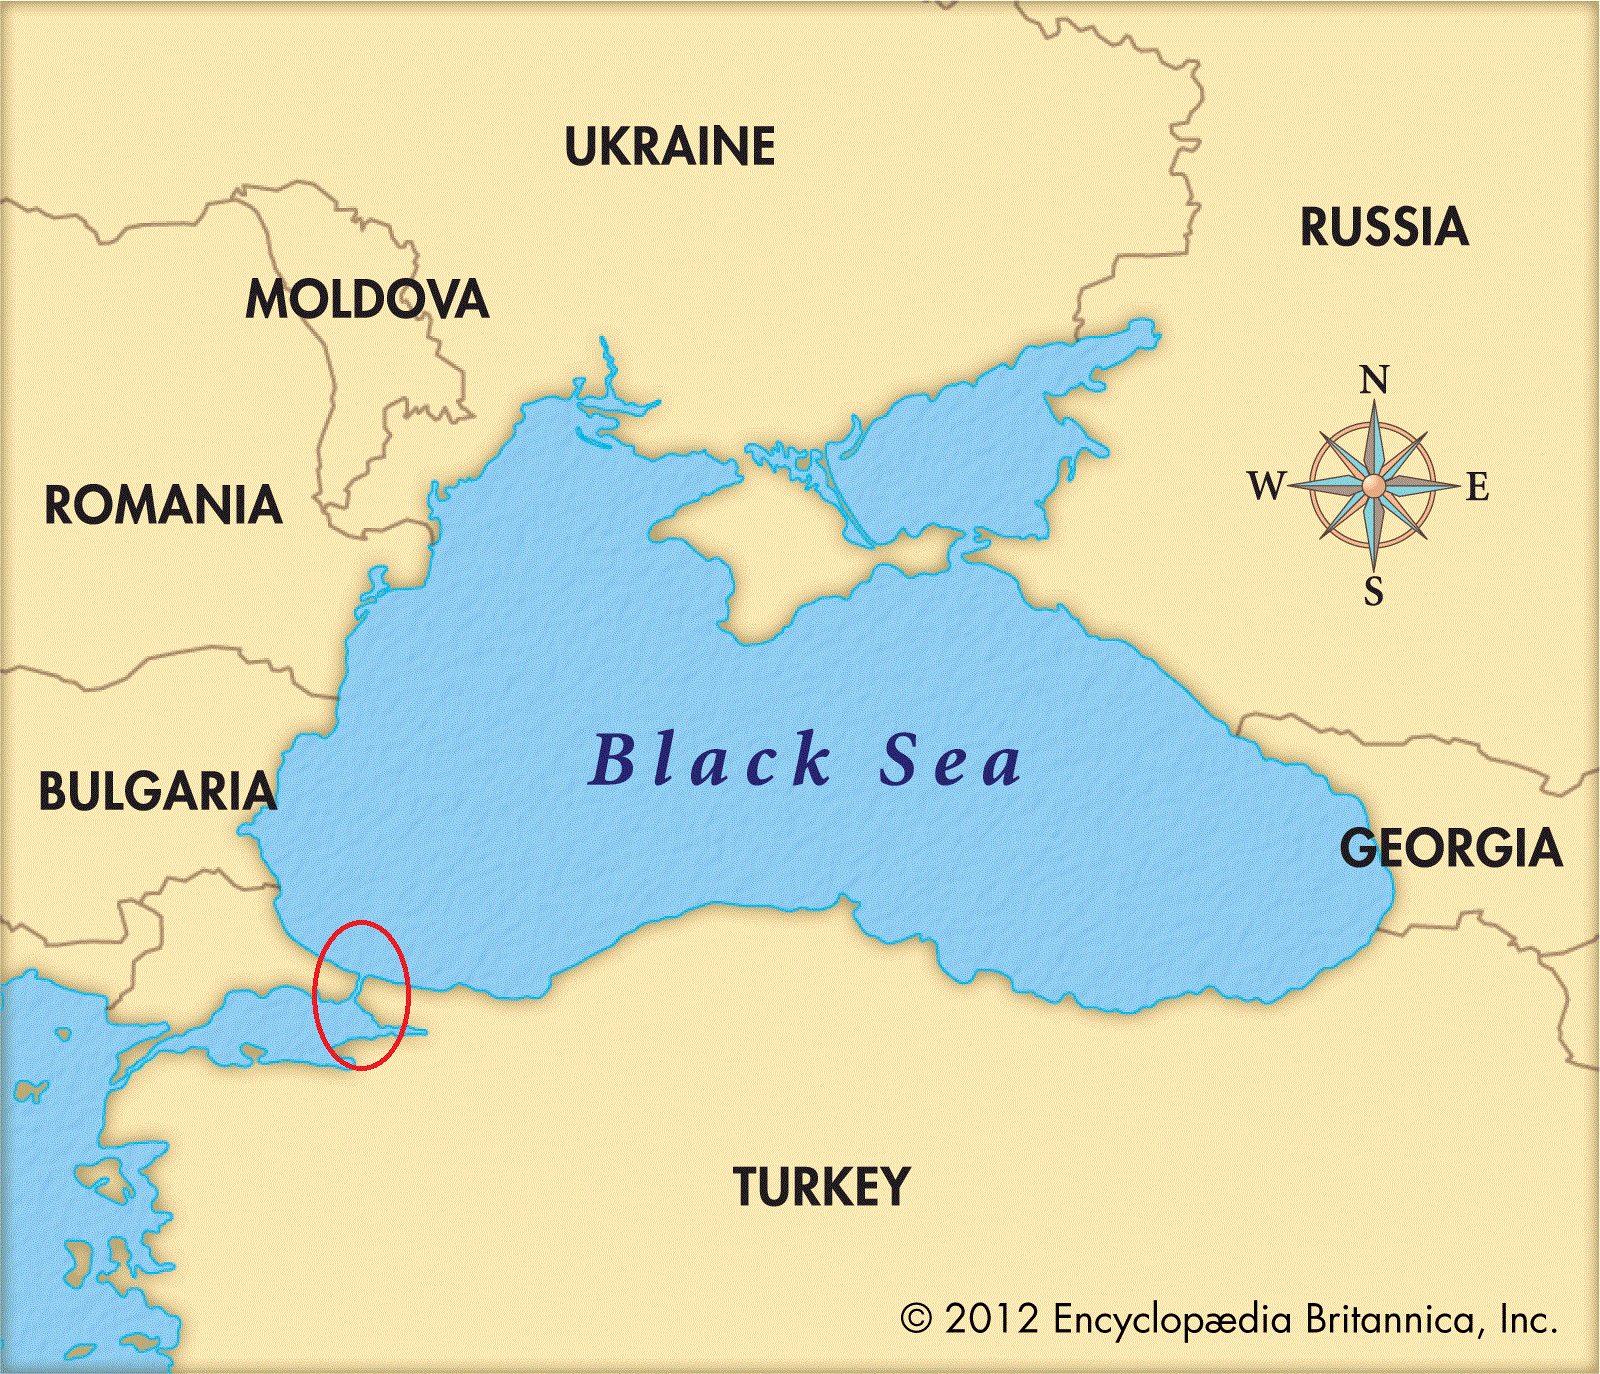 
Eo biển Bosphorus - Cửa ngõ ra vào biển Đen
